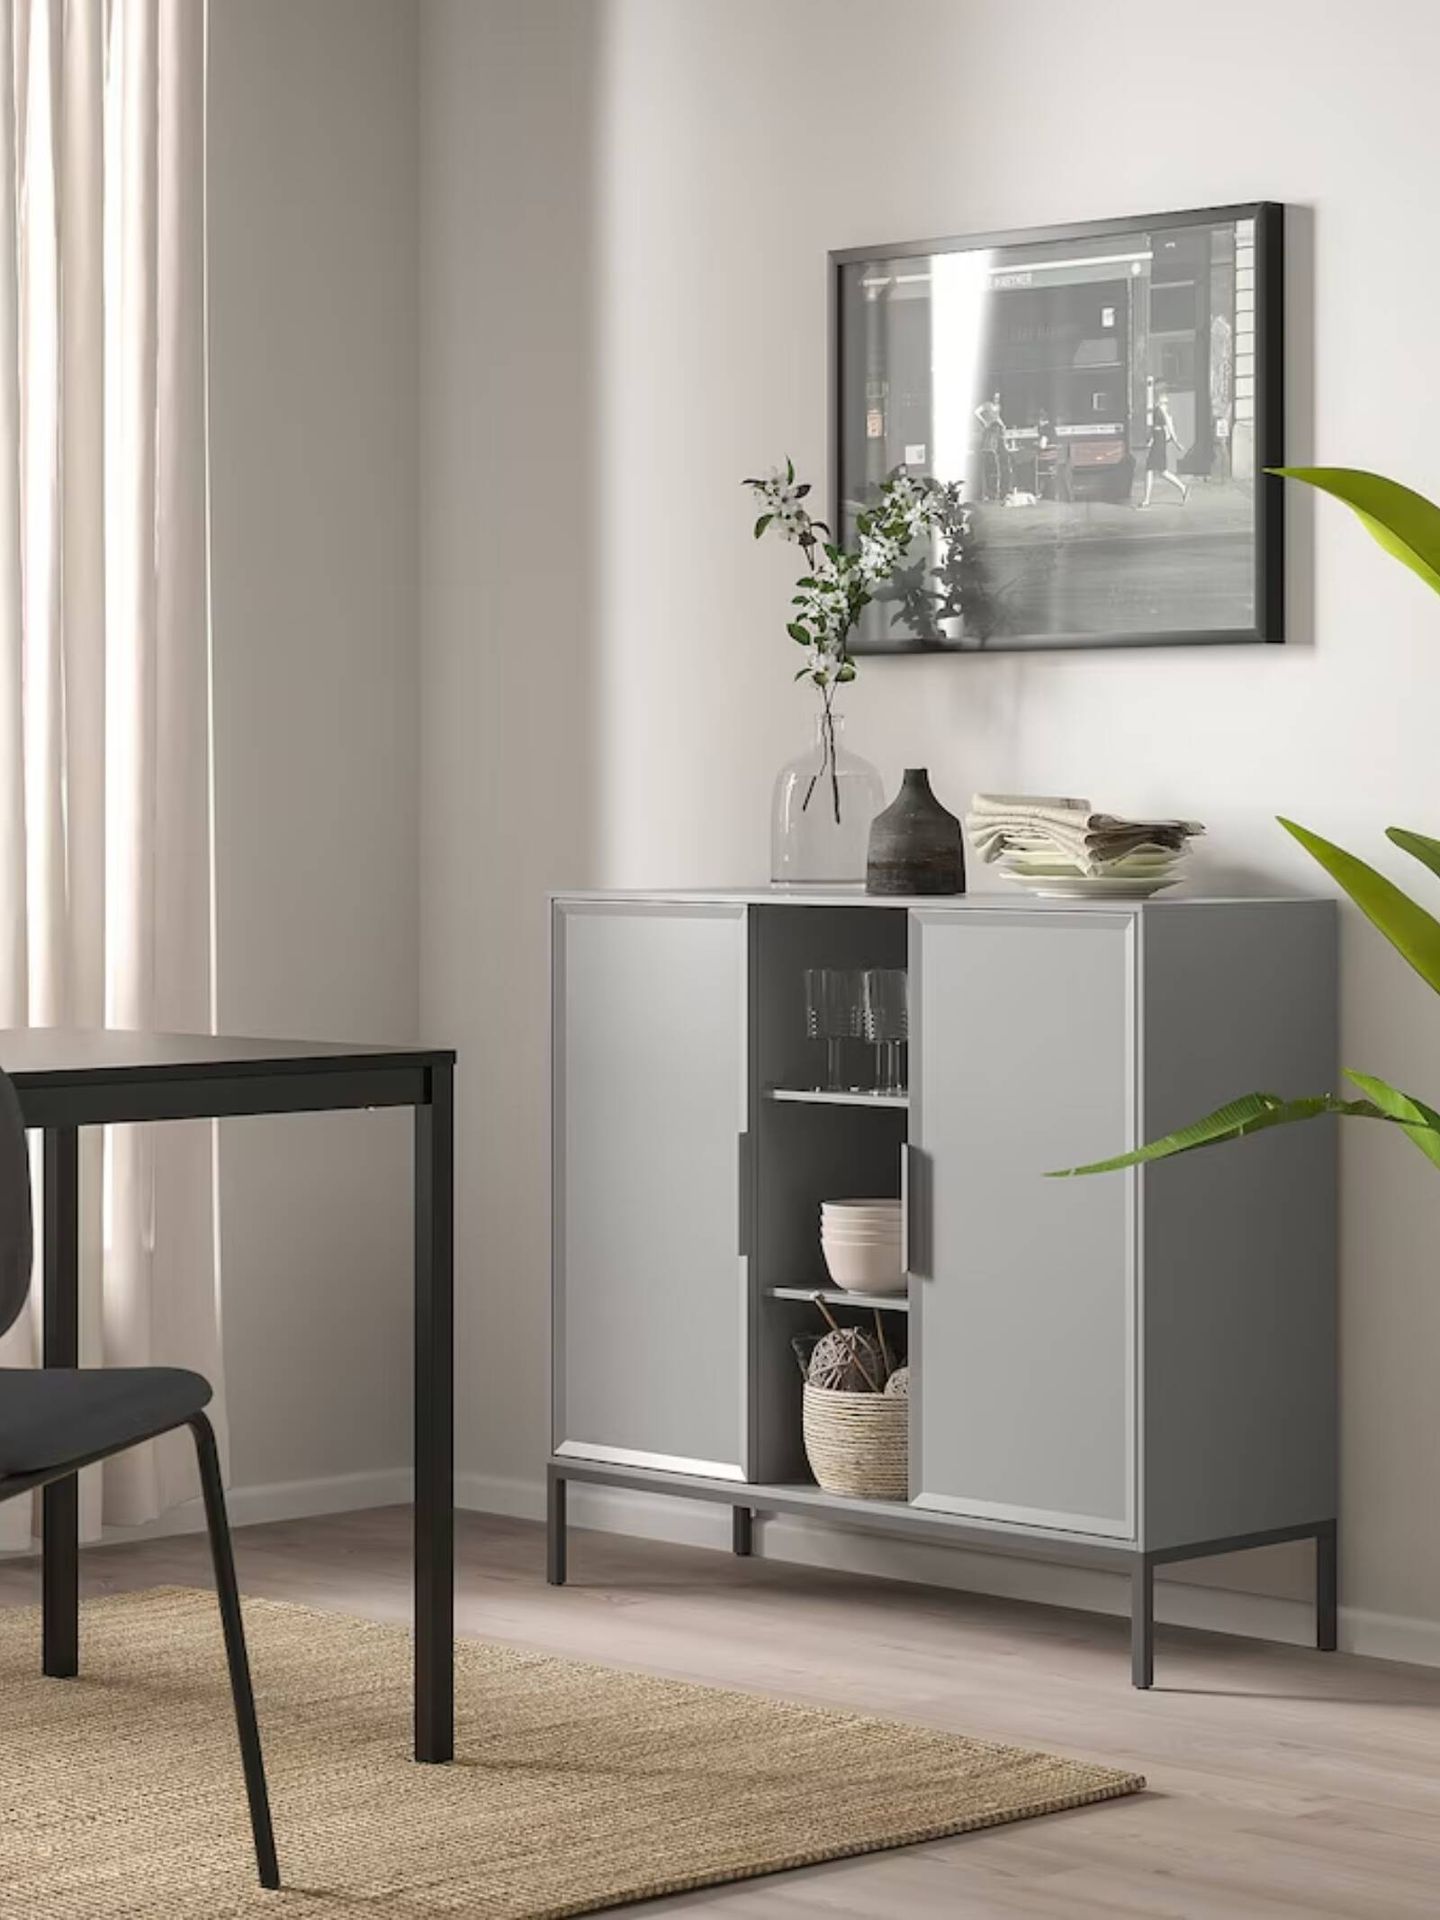 Ideal para casas pequeñas, así es el nuevo mueble de Ikea. (Cortesía/Ikea)